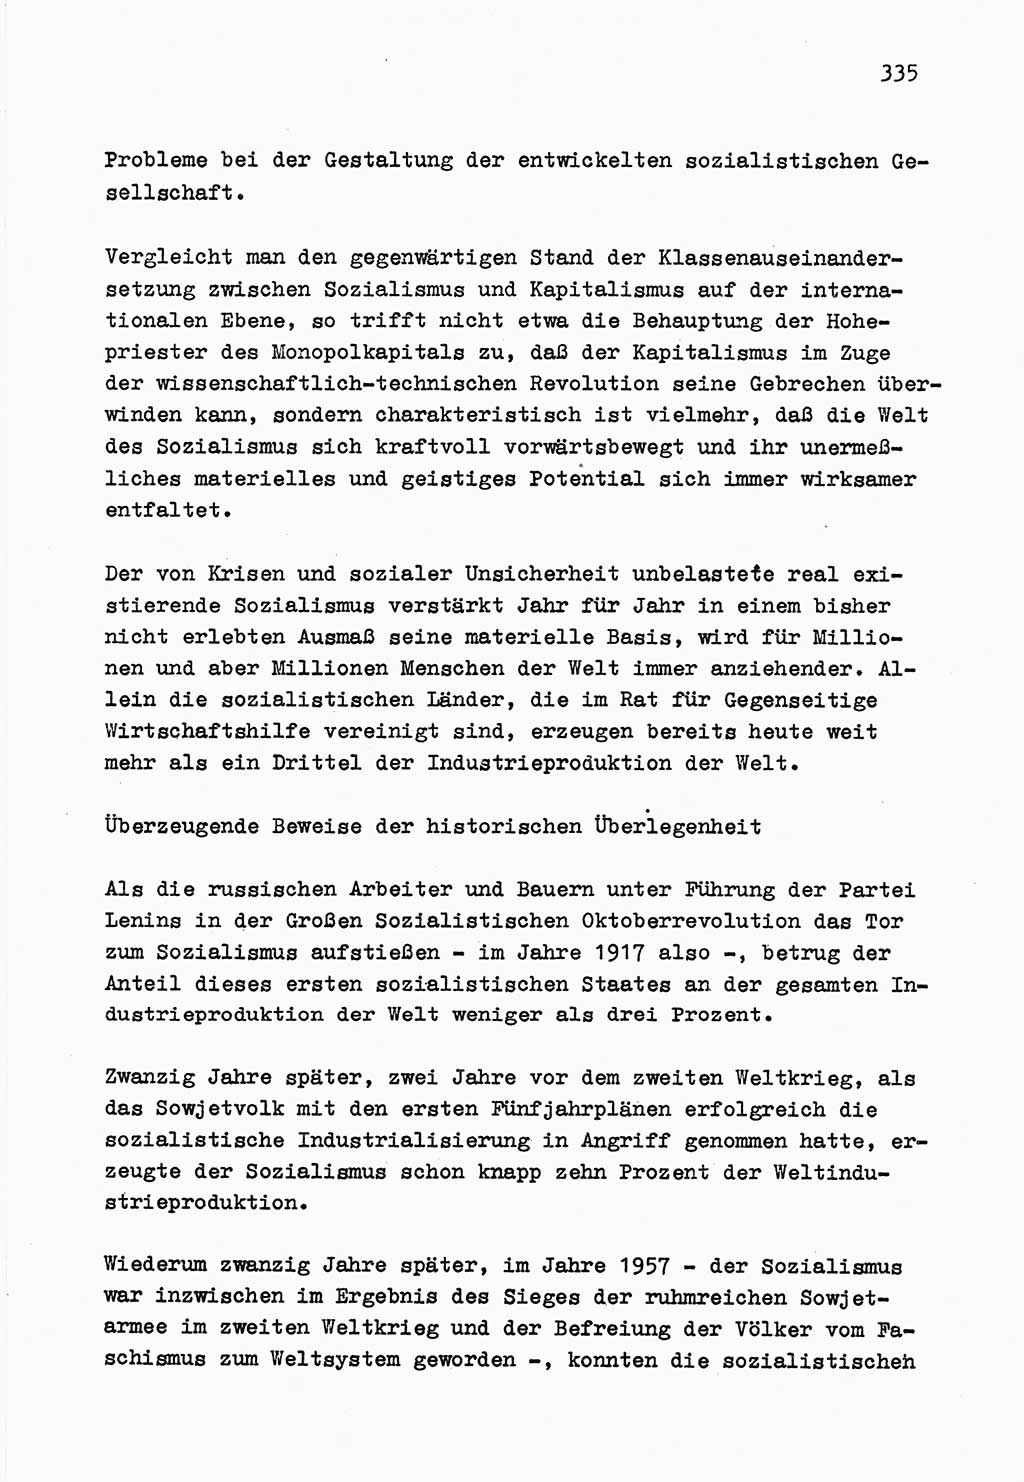 Zu Fragen der Parteiarbeit [Sozialistische Einheitspartei Deutschlands (SED) Deutsche Demokratische Republik (DDR)] 1979, Seite 335 (Fr. PA SED DDR 1979, S. 335)